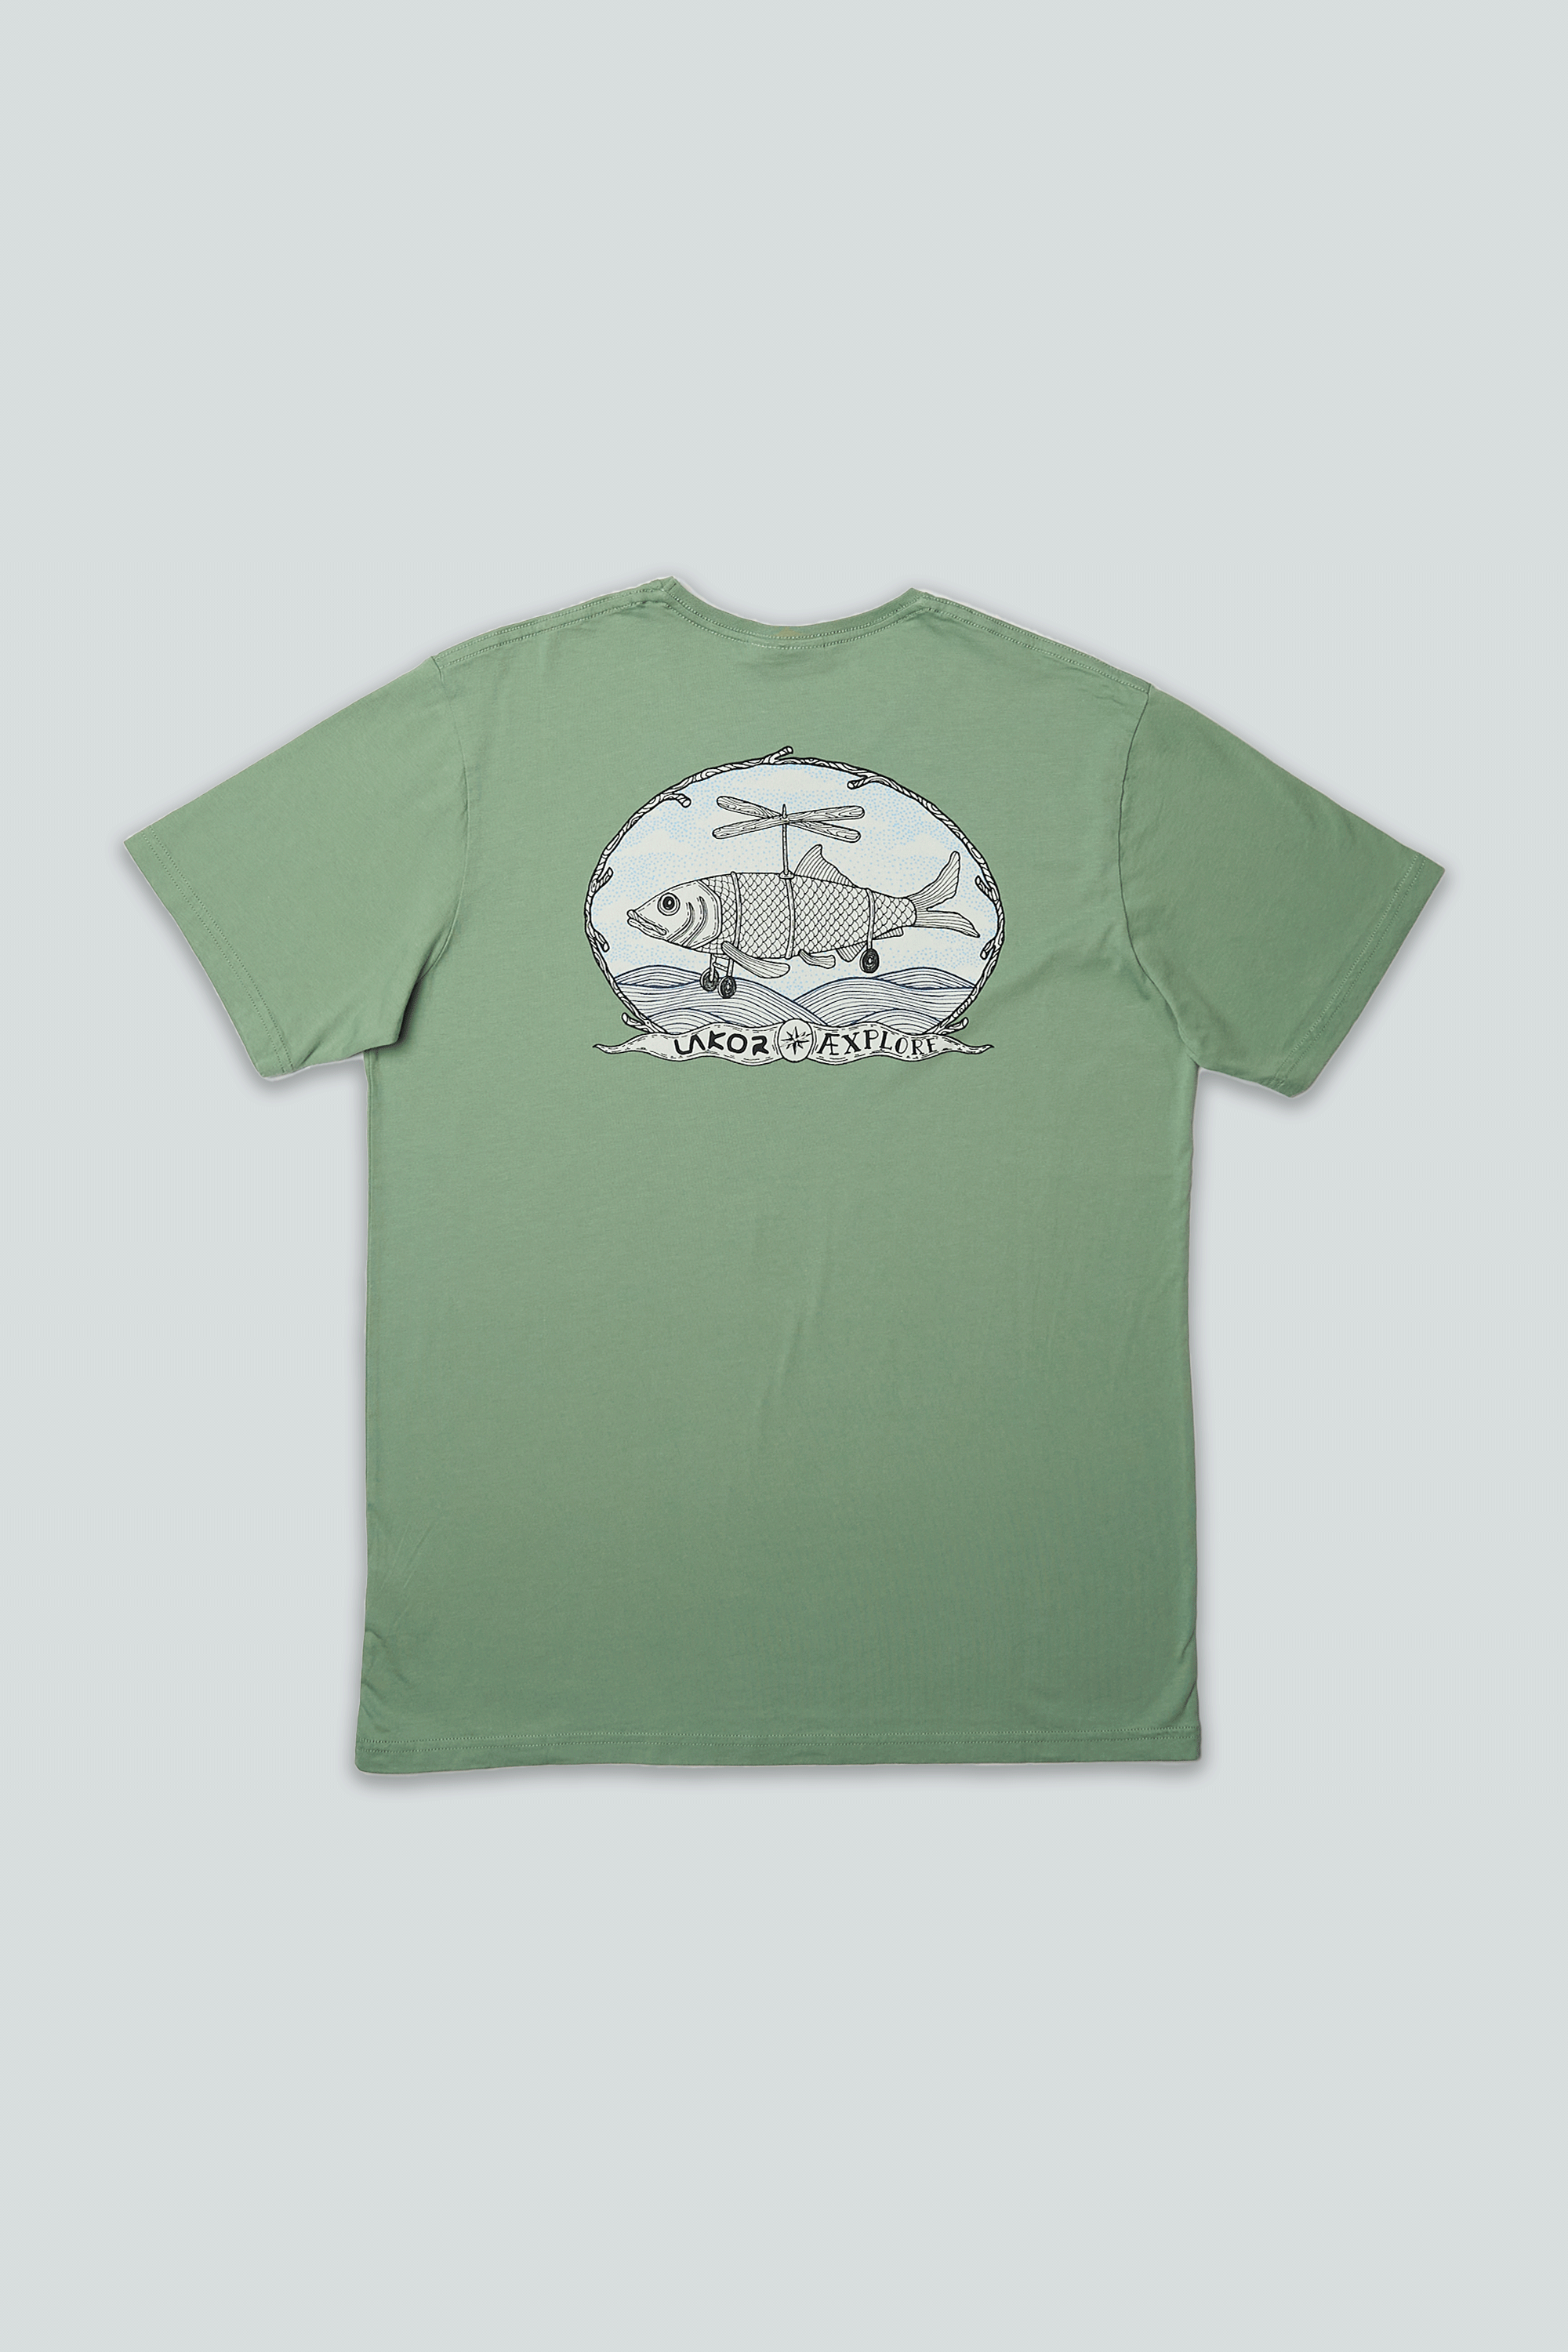 Flyfish T-shirt